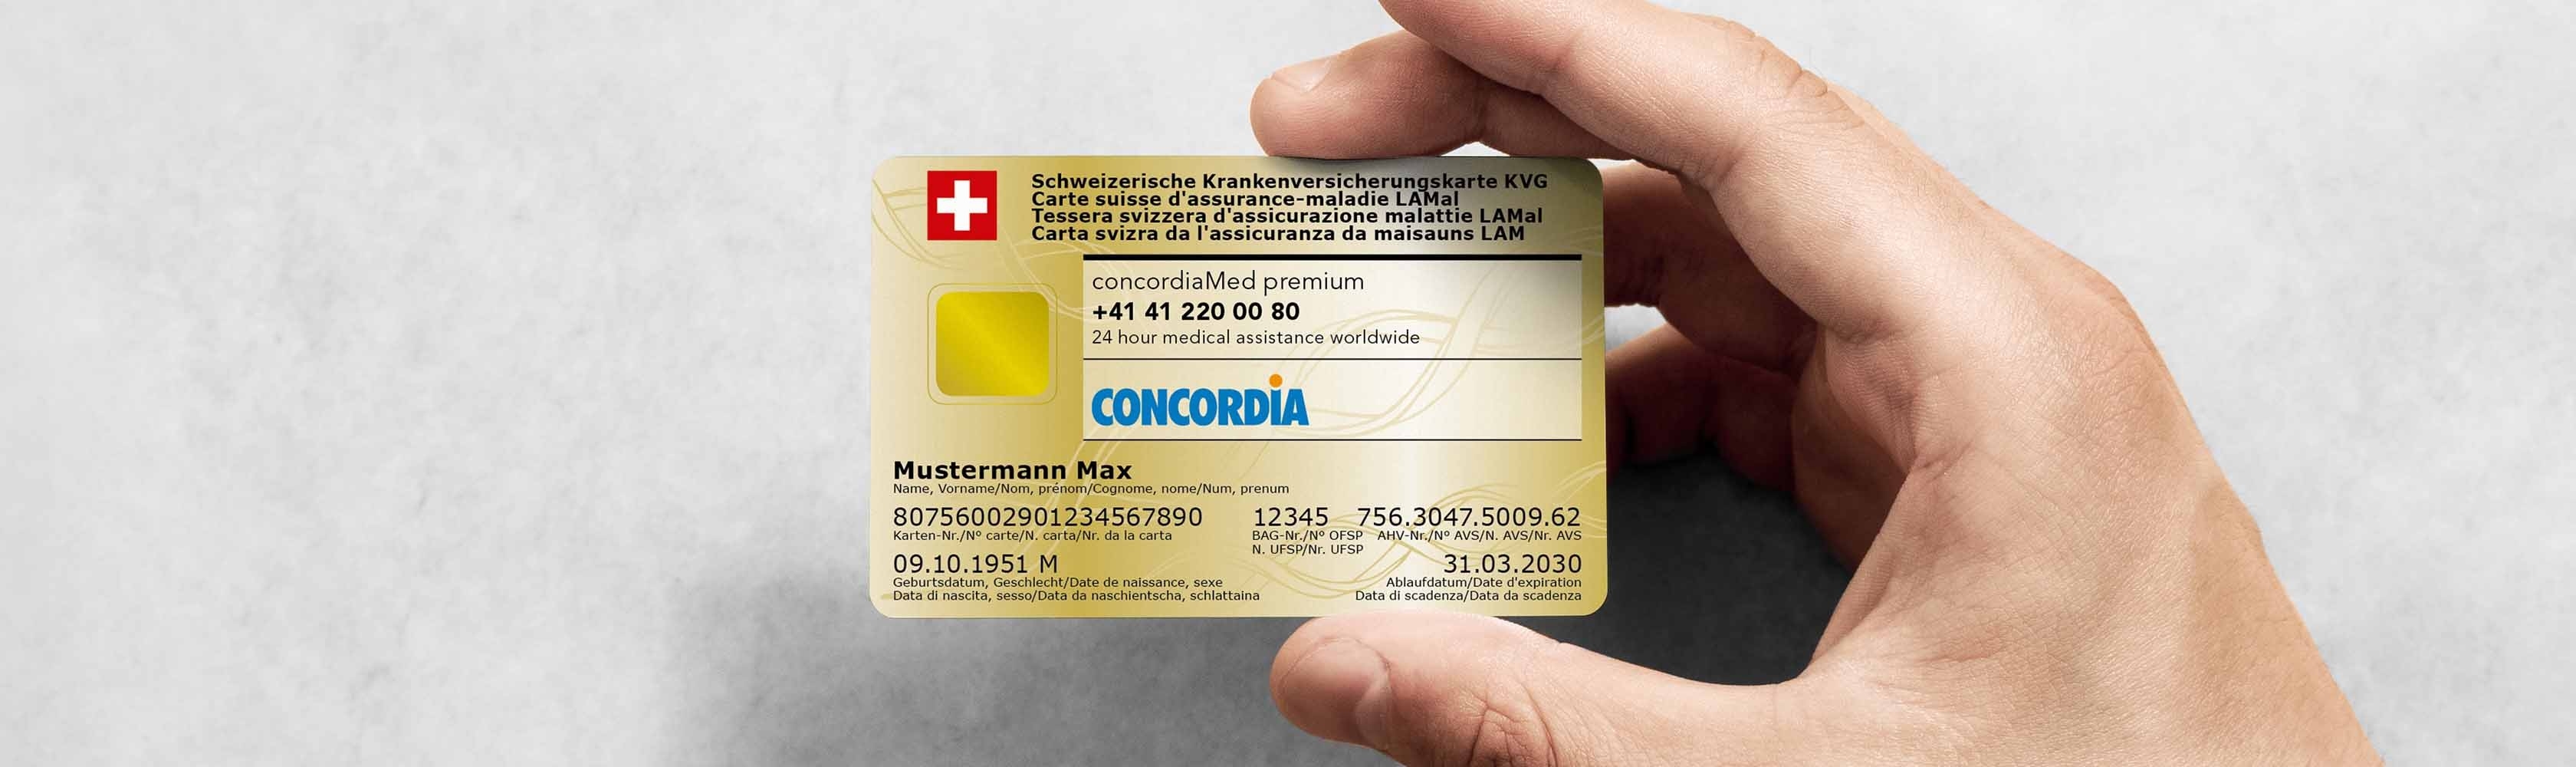 CONCORDIA health insurance card